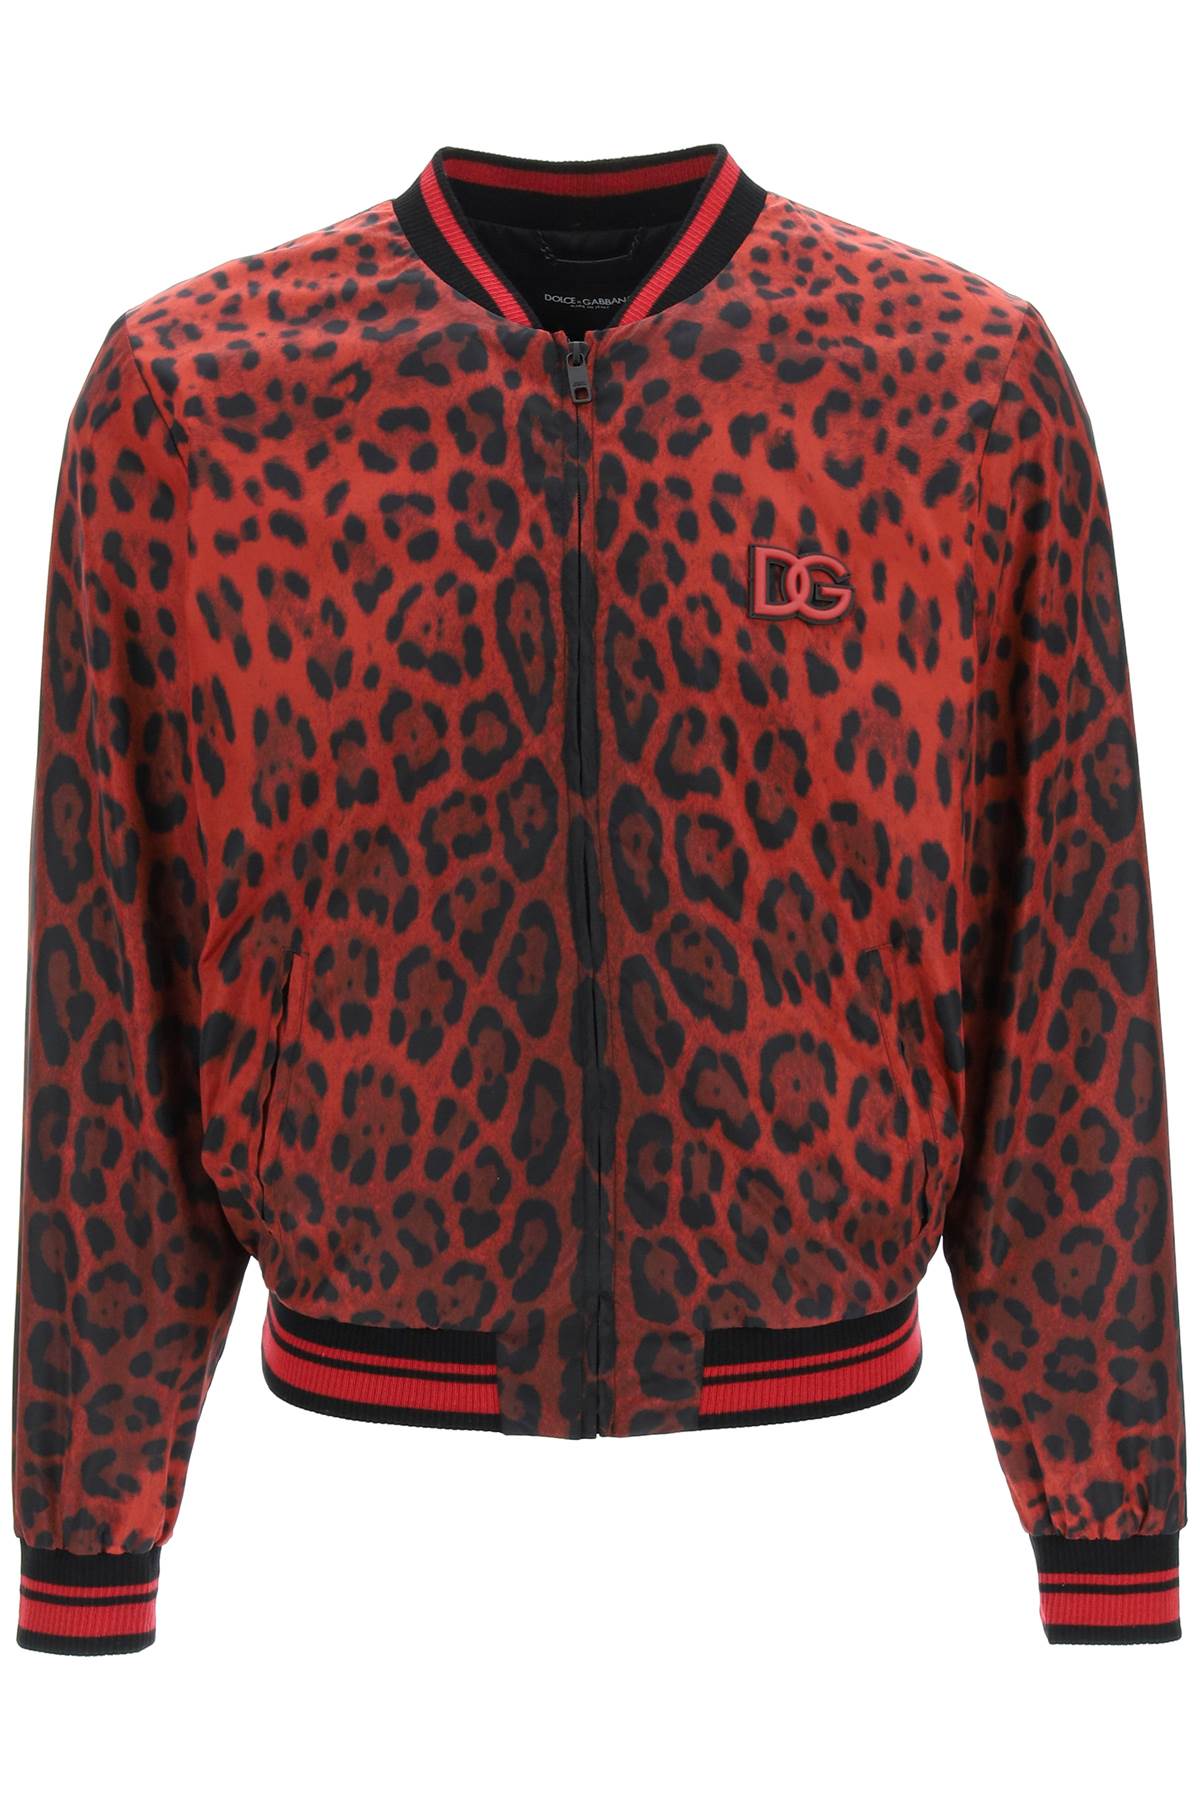 Dolce & Gabbana Hot Animalier Bomber Jacket